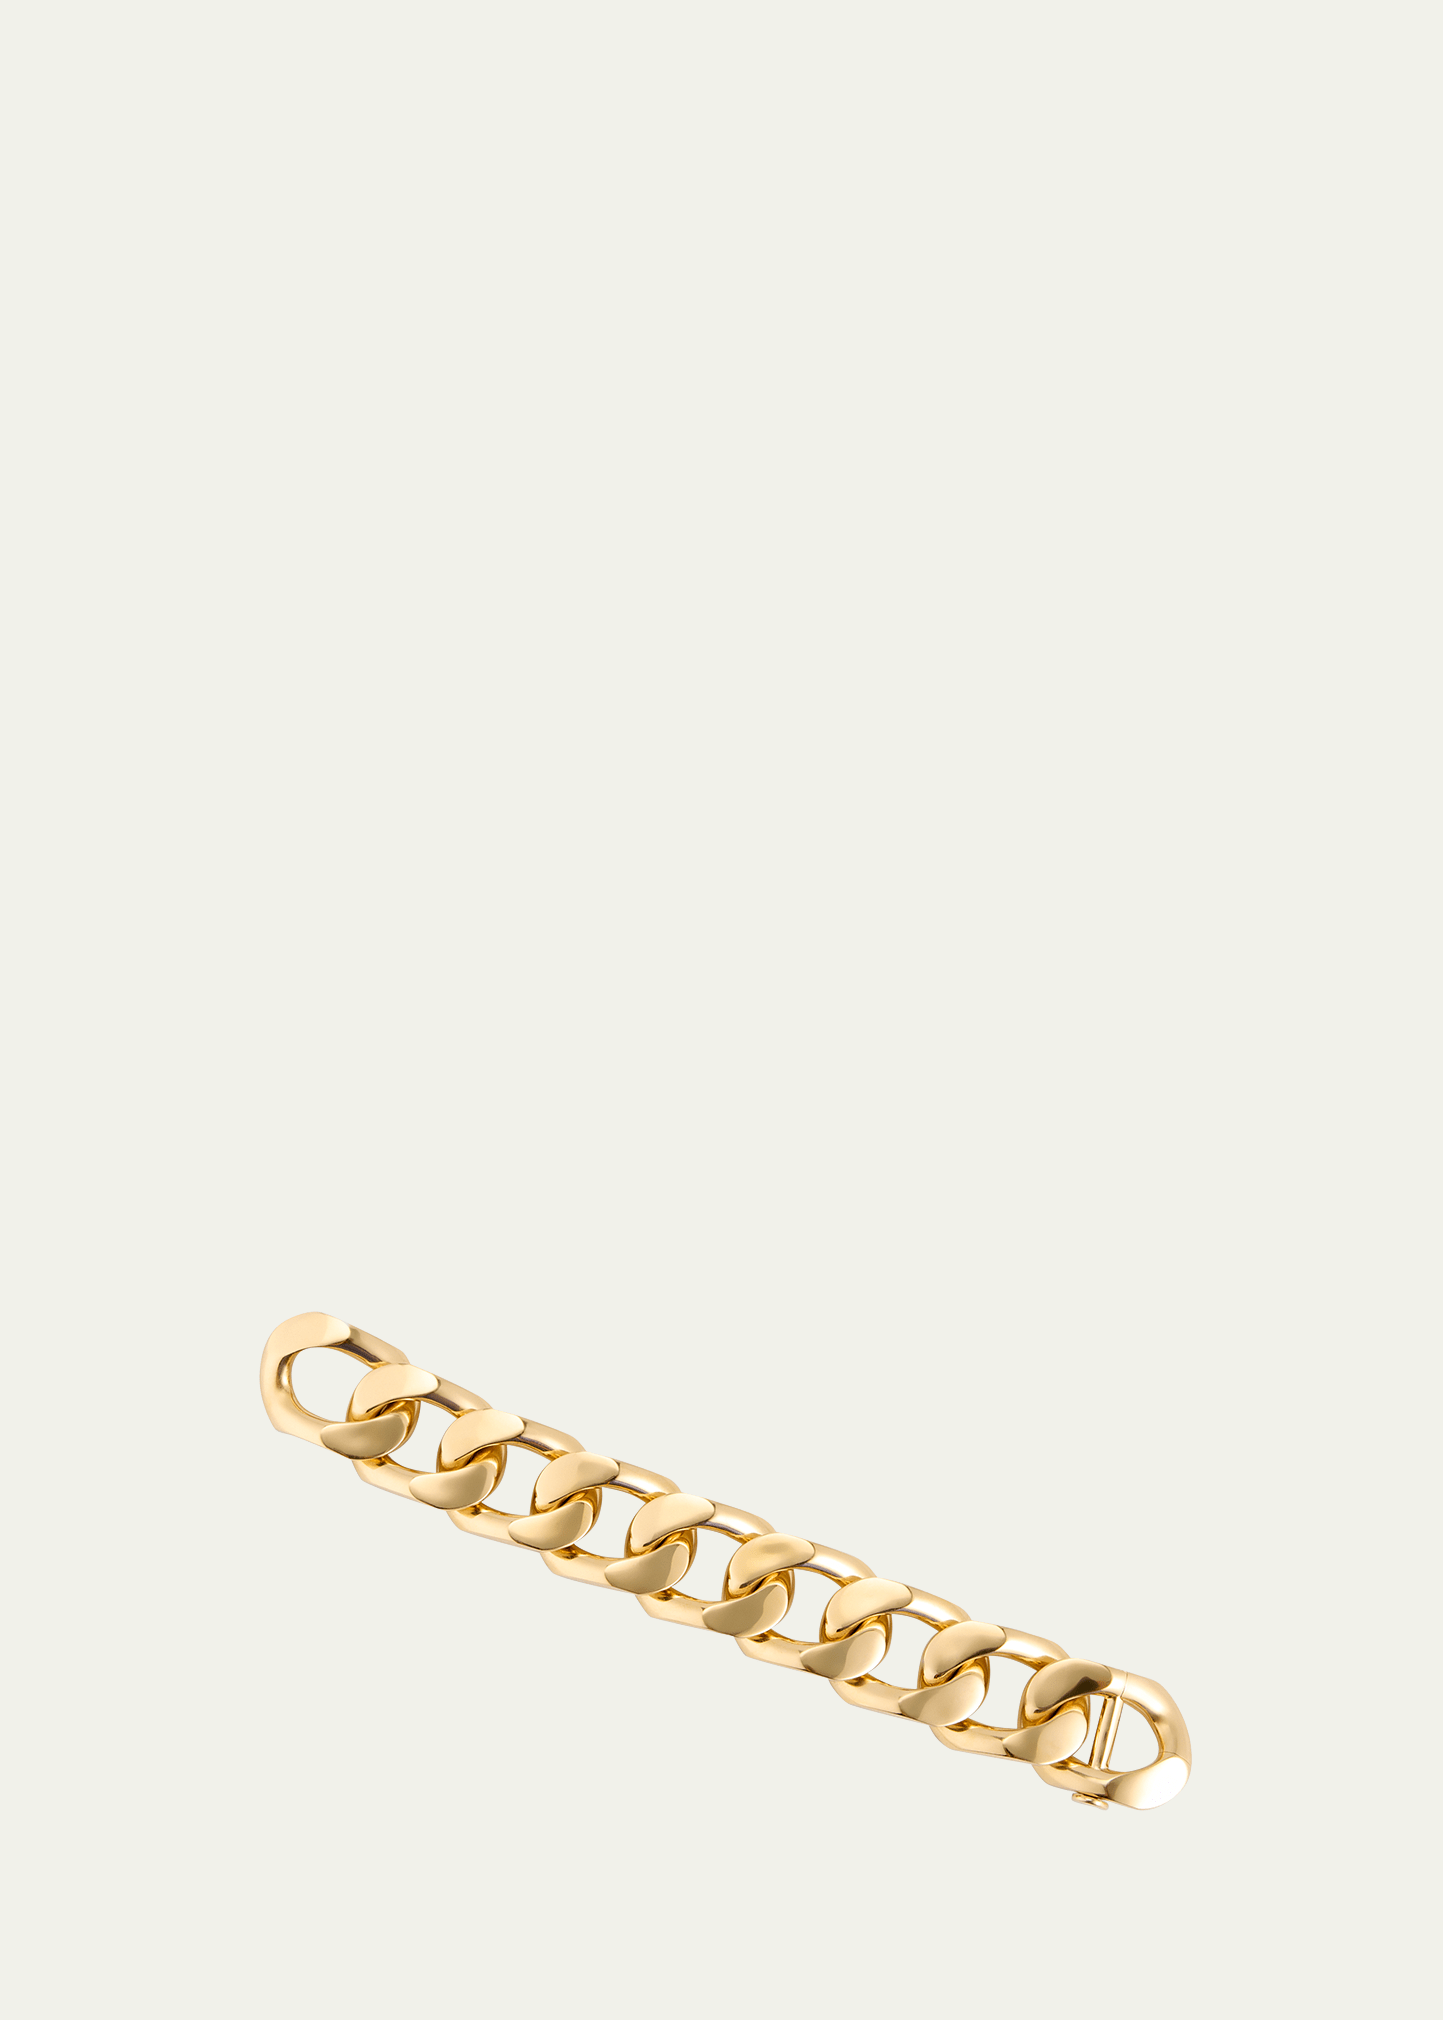 Engelbert New York 66 Bracelet, Big, In Yellow Gold, 9 Links